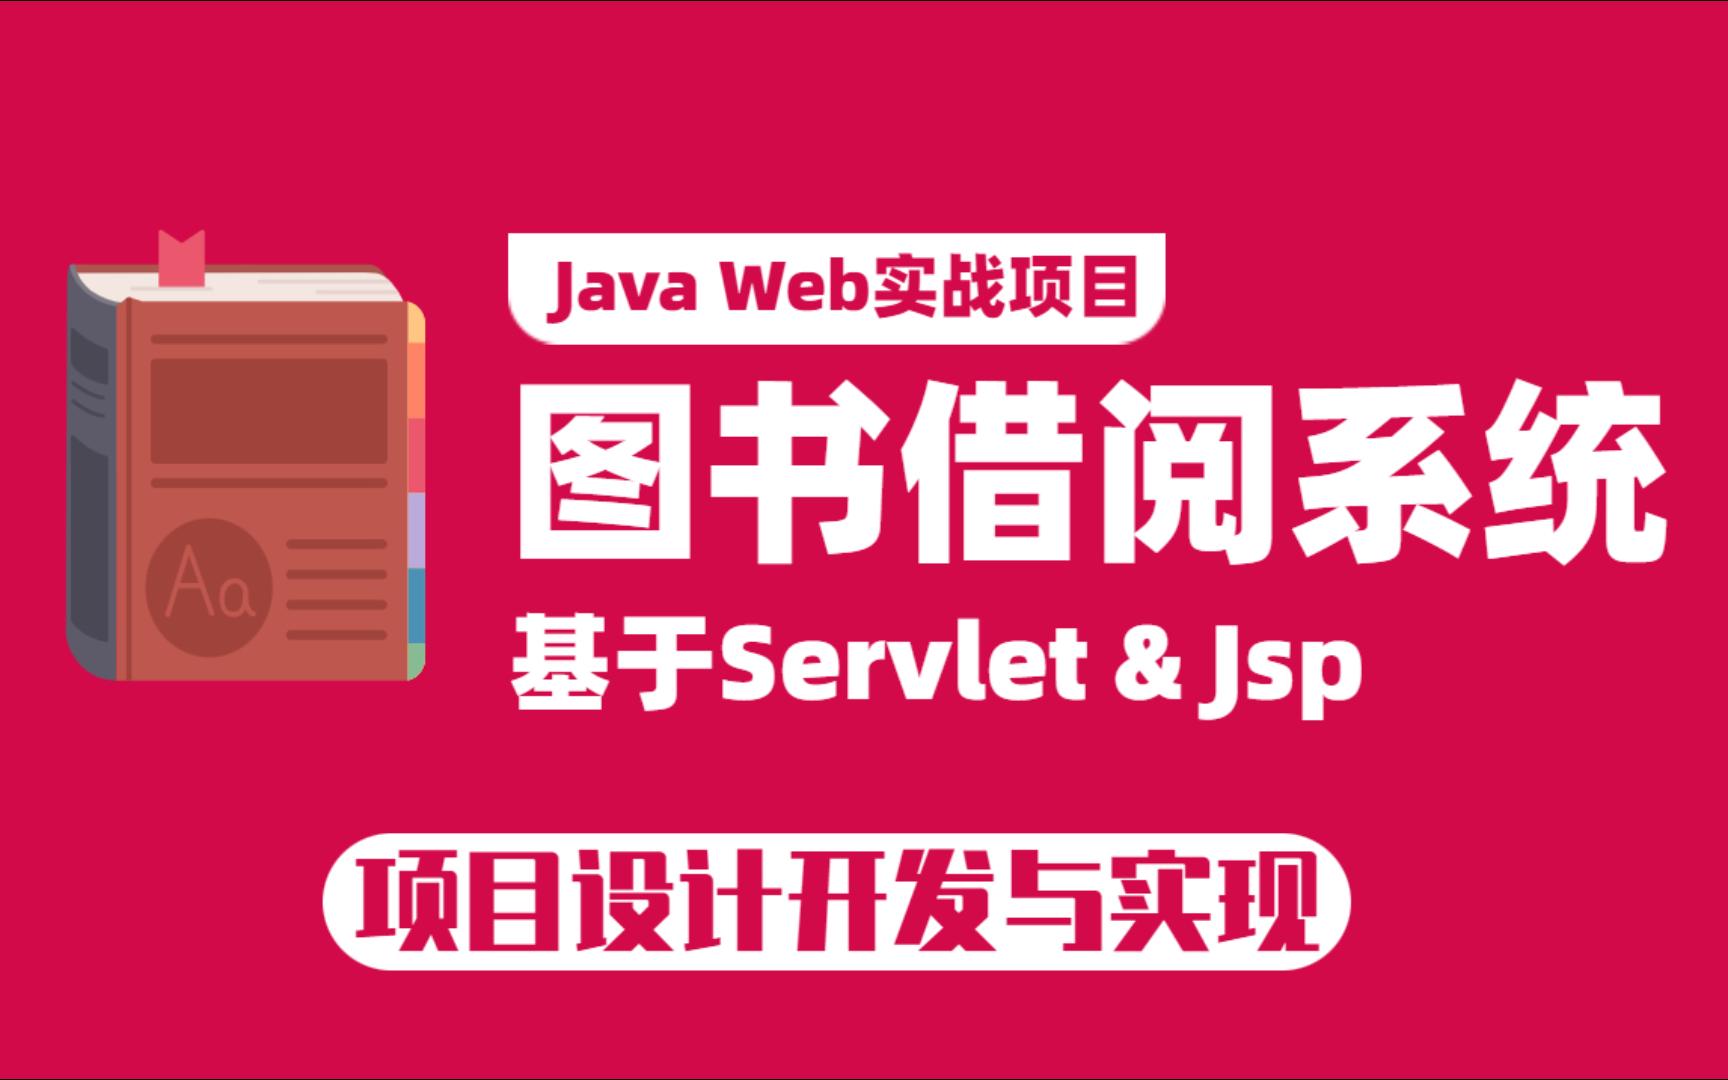 基于JavaWEB开发的图书借阅管理系统，增 删 改 查完整版教学，附课件源码，拿走不谢！Java项目_Java实战_JAVA开发